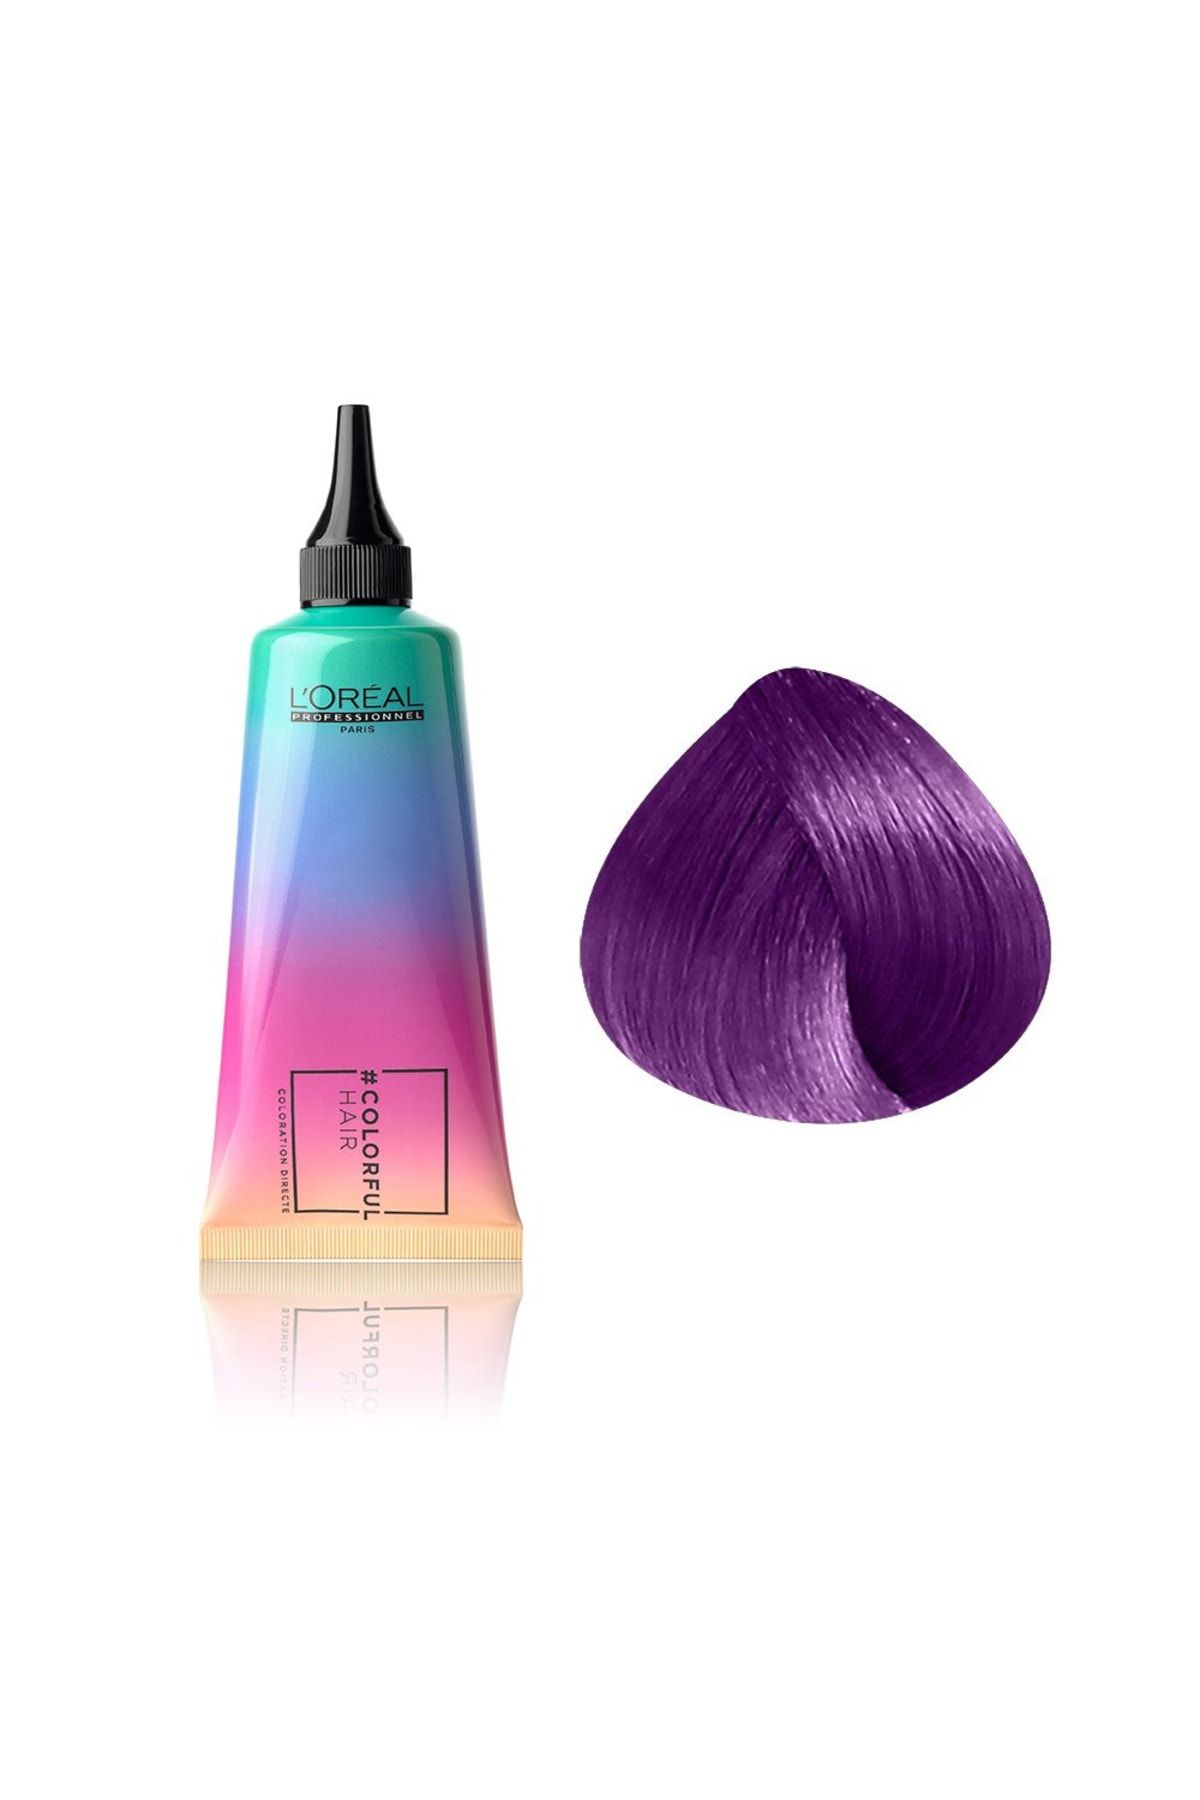 L'oreal Professionnel Colorful Hair Electric Purple Mor Canlı Göz Alıcı Yarı Kalıcı Saç Boyası 90ml